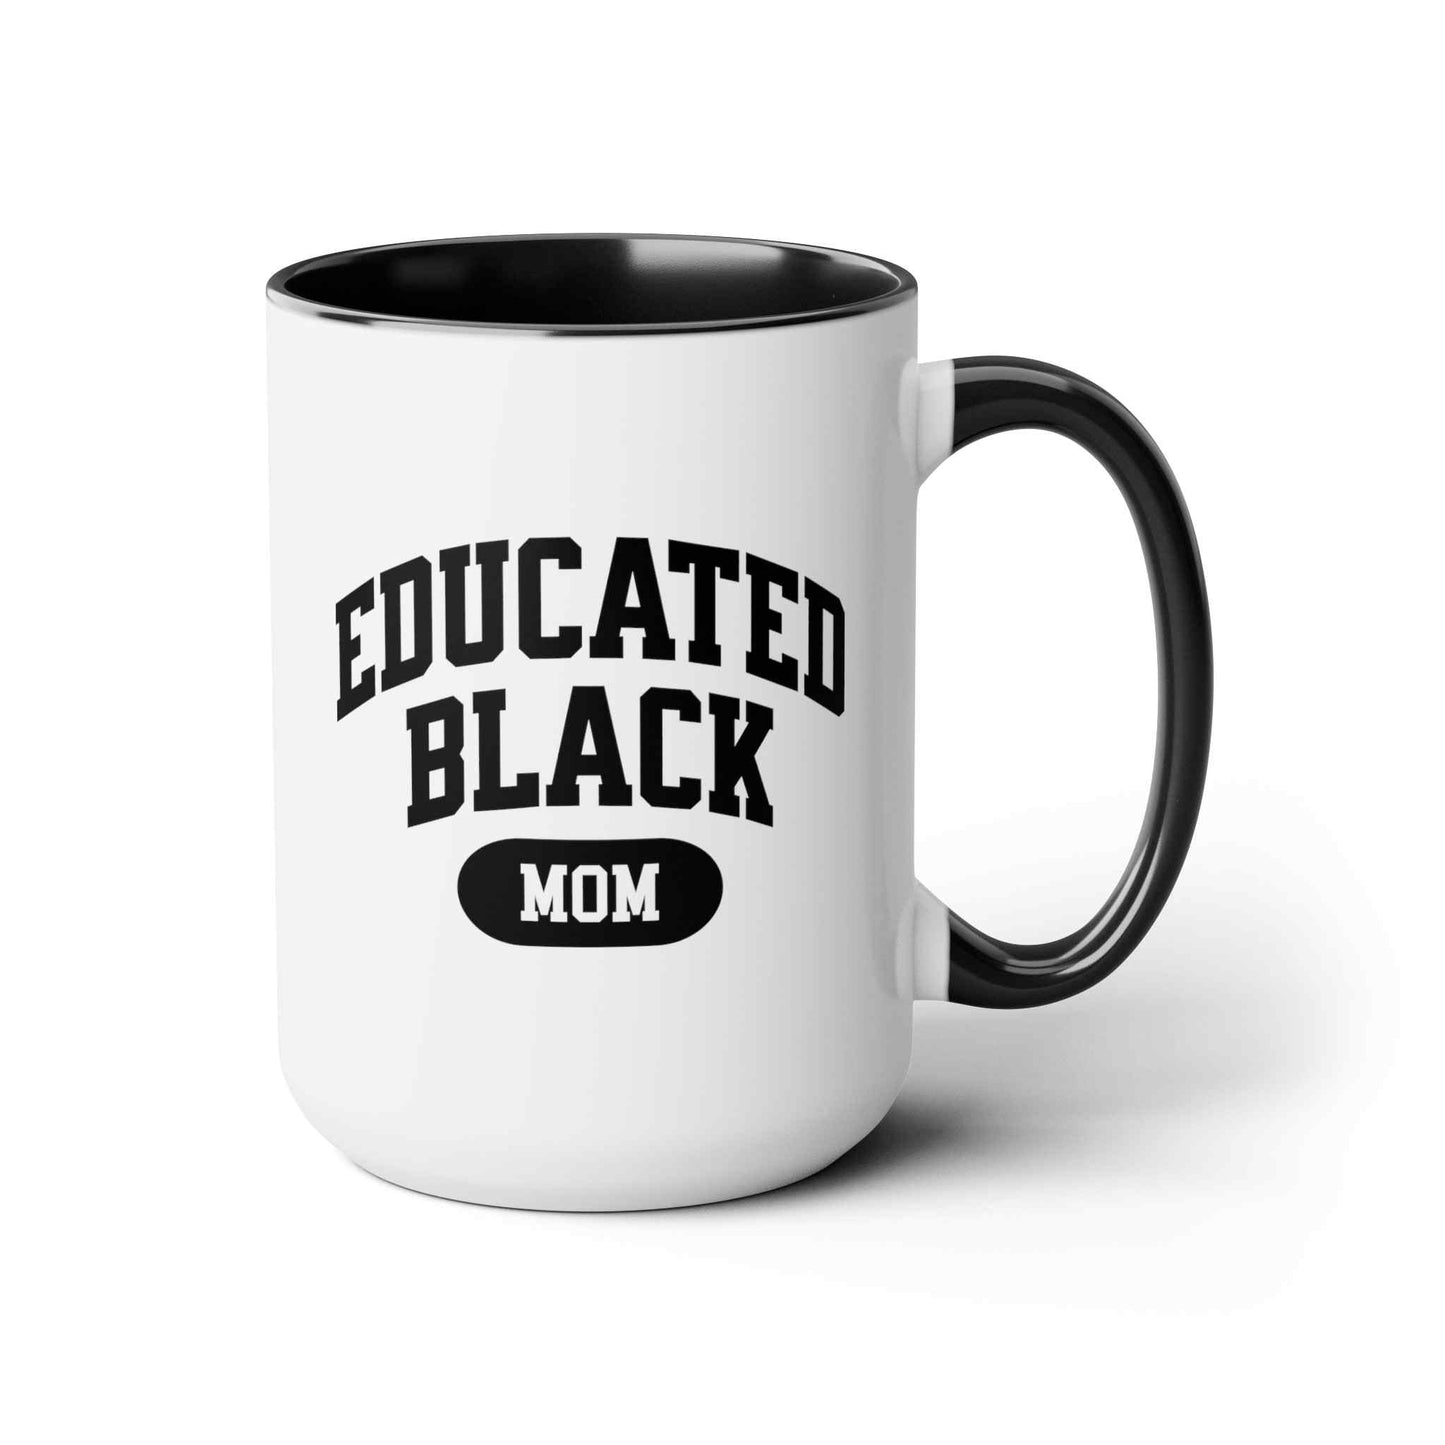 Educated Black Mom Two-Tone Coffee Mug, 15oz